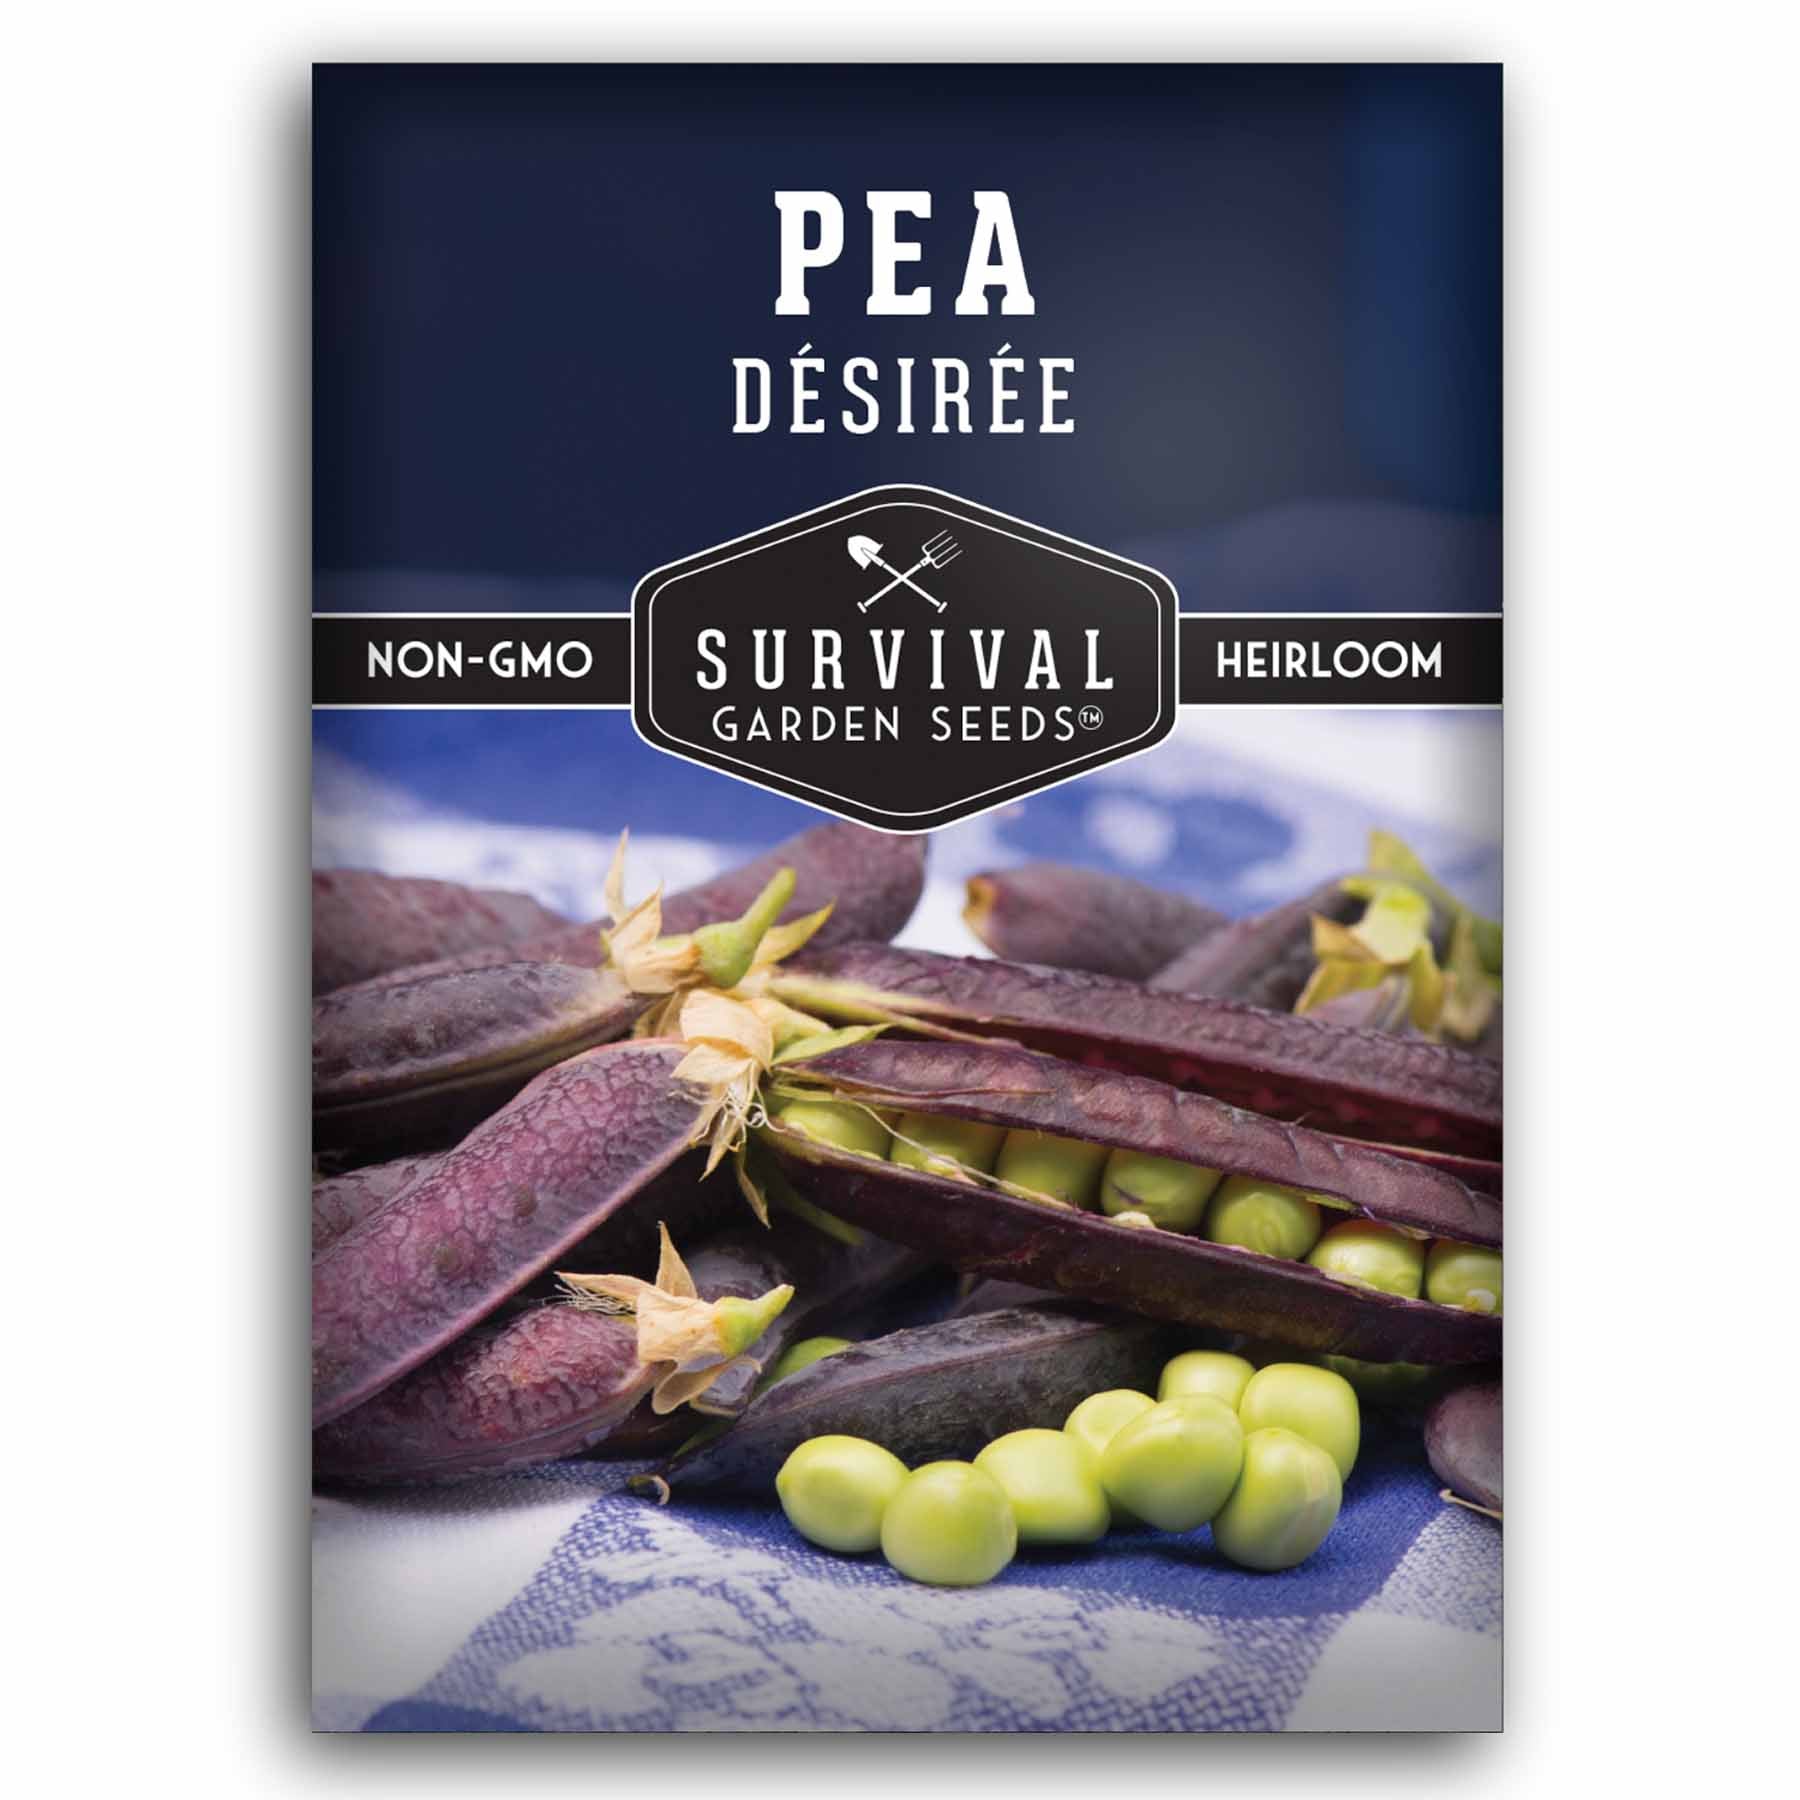 1 packet of Desiree Pea seeds